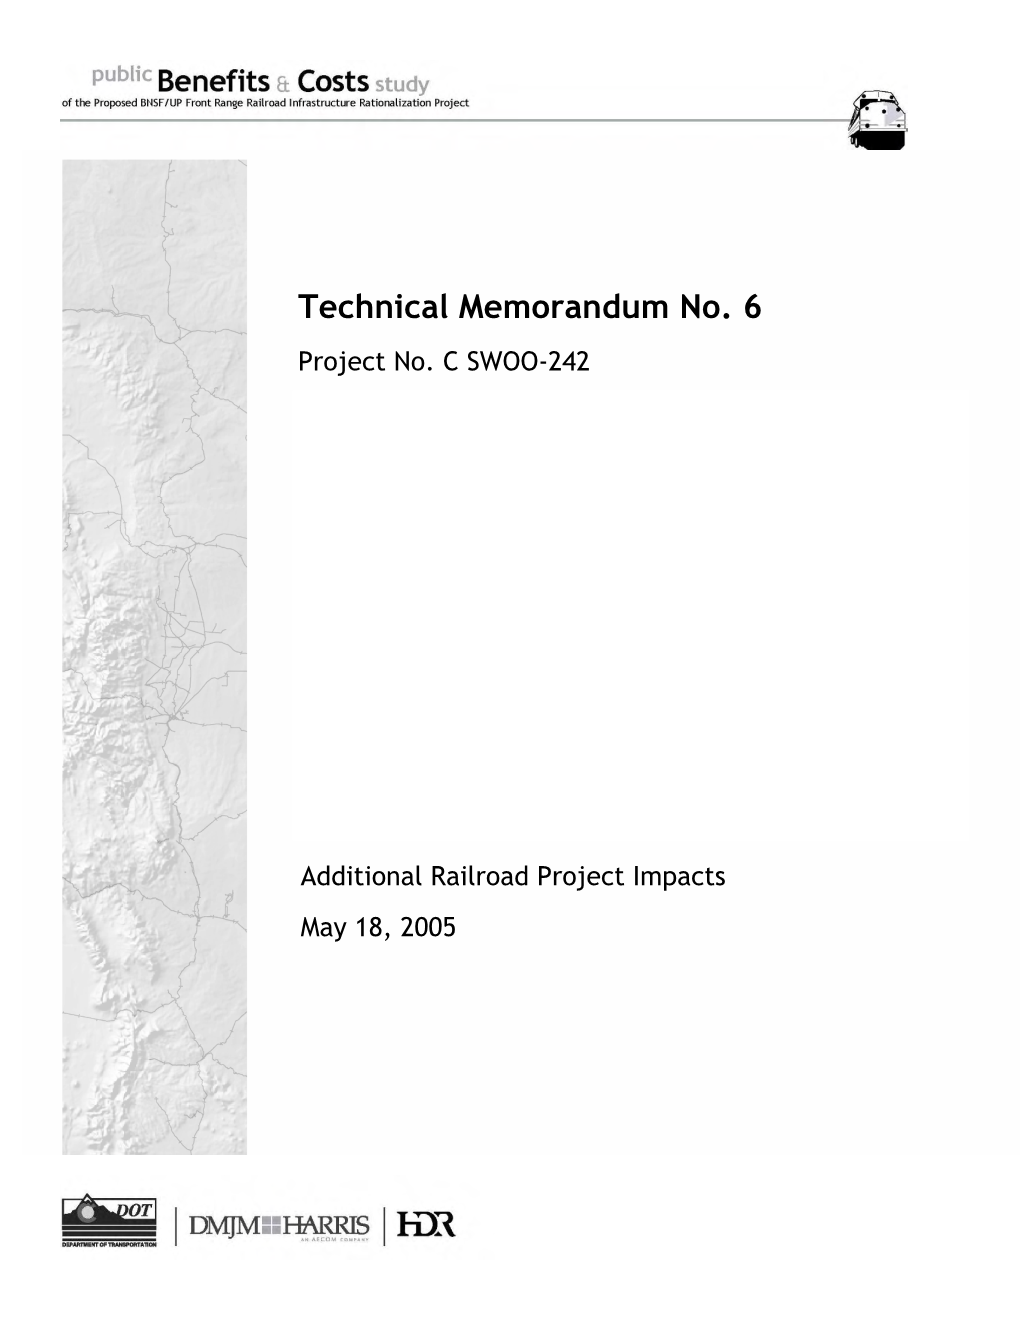 Technical Memorandum No. 6 Project No